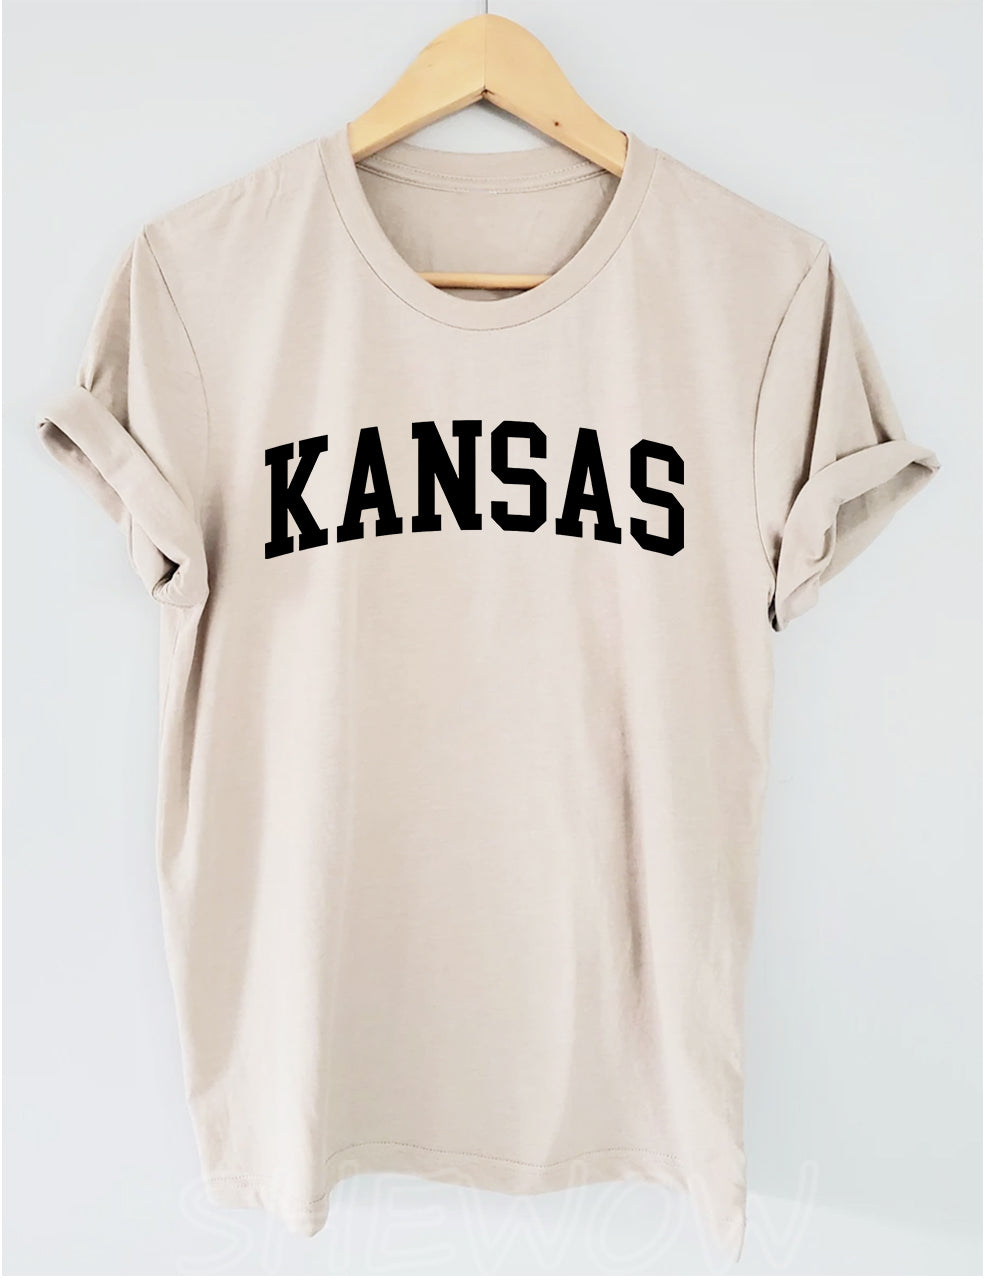 Kansas State T-shirt